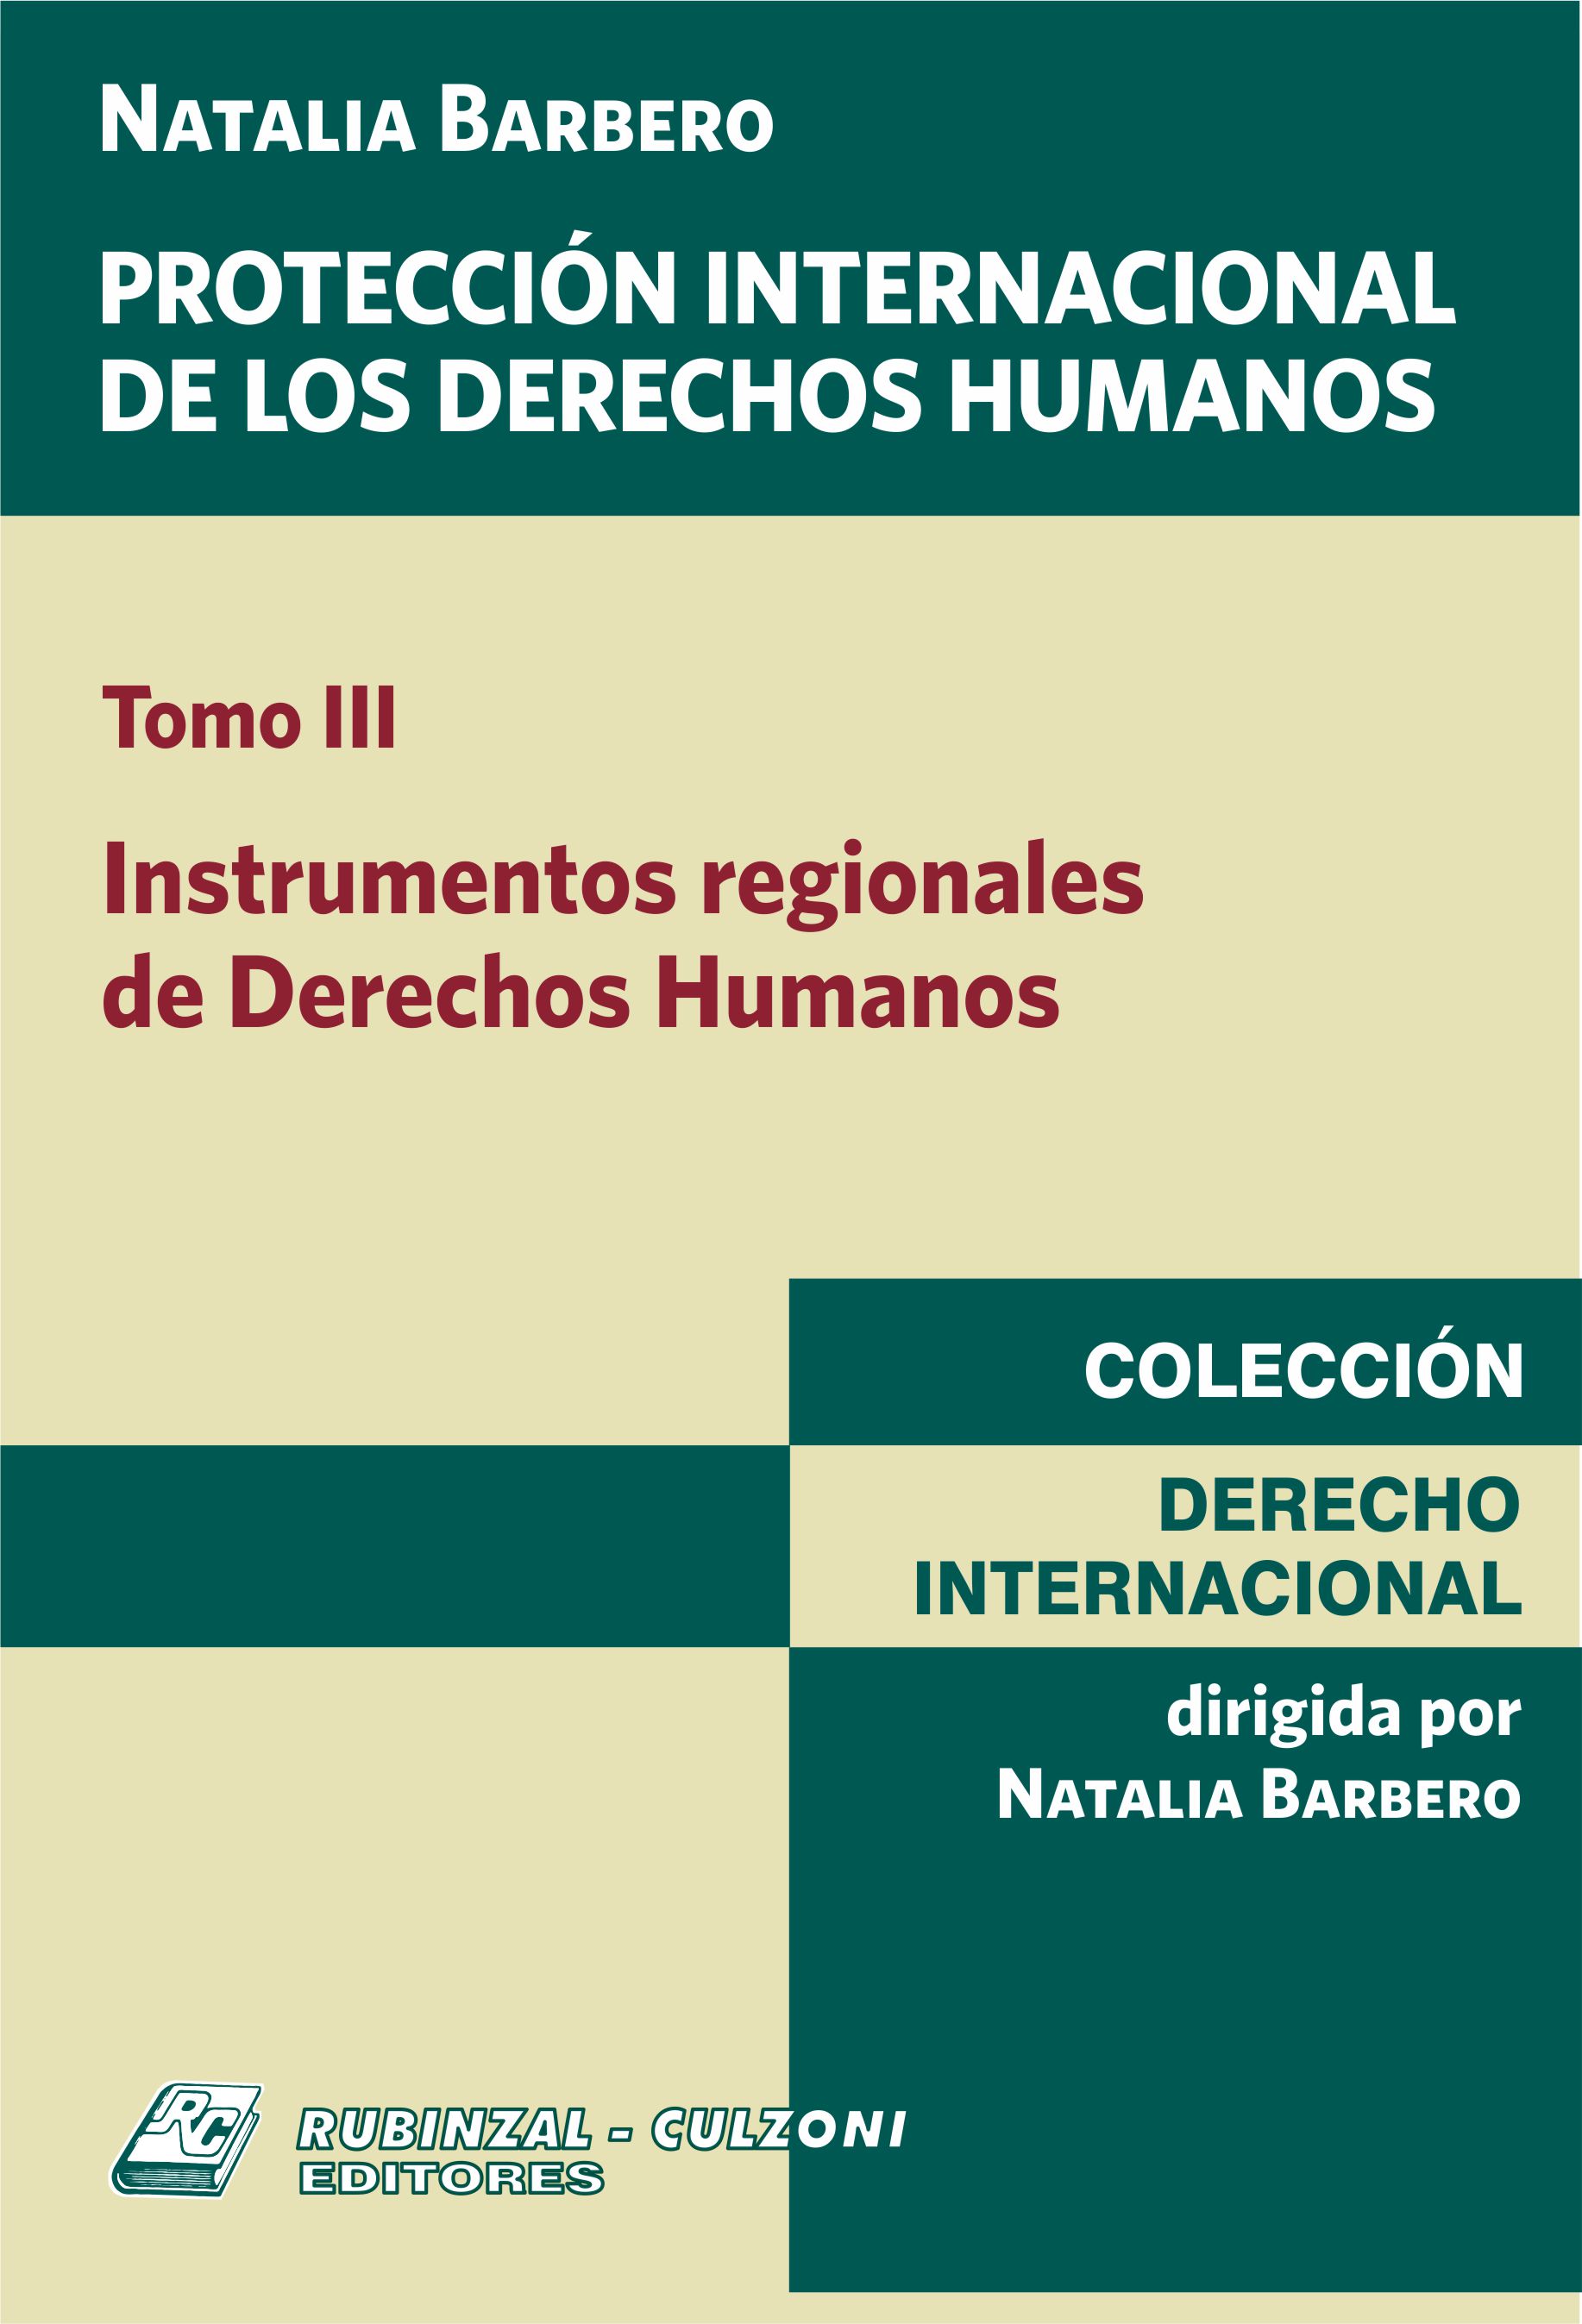 Protección Internacional de los Derechos Humanos. - Tomo III. Instrumentos regionales de Derechos Humanos.